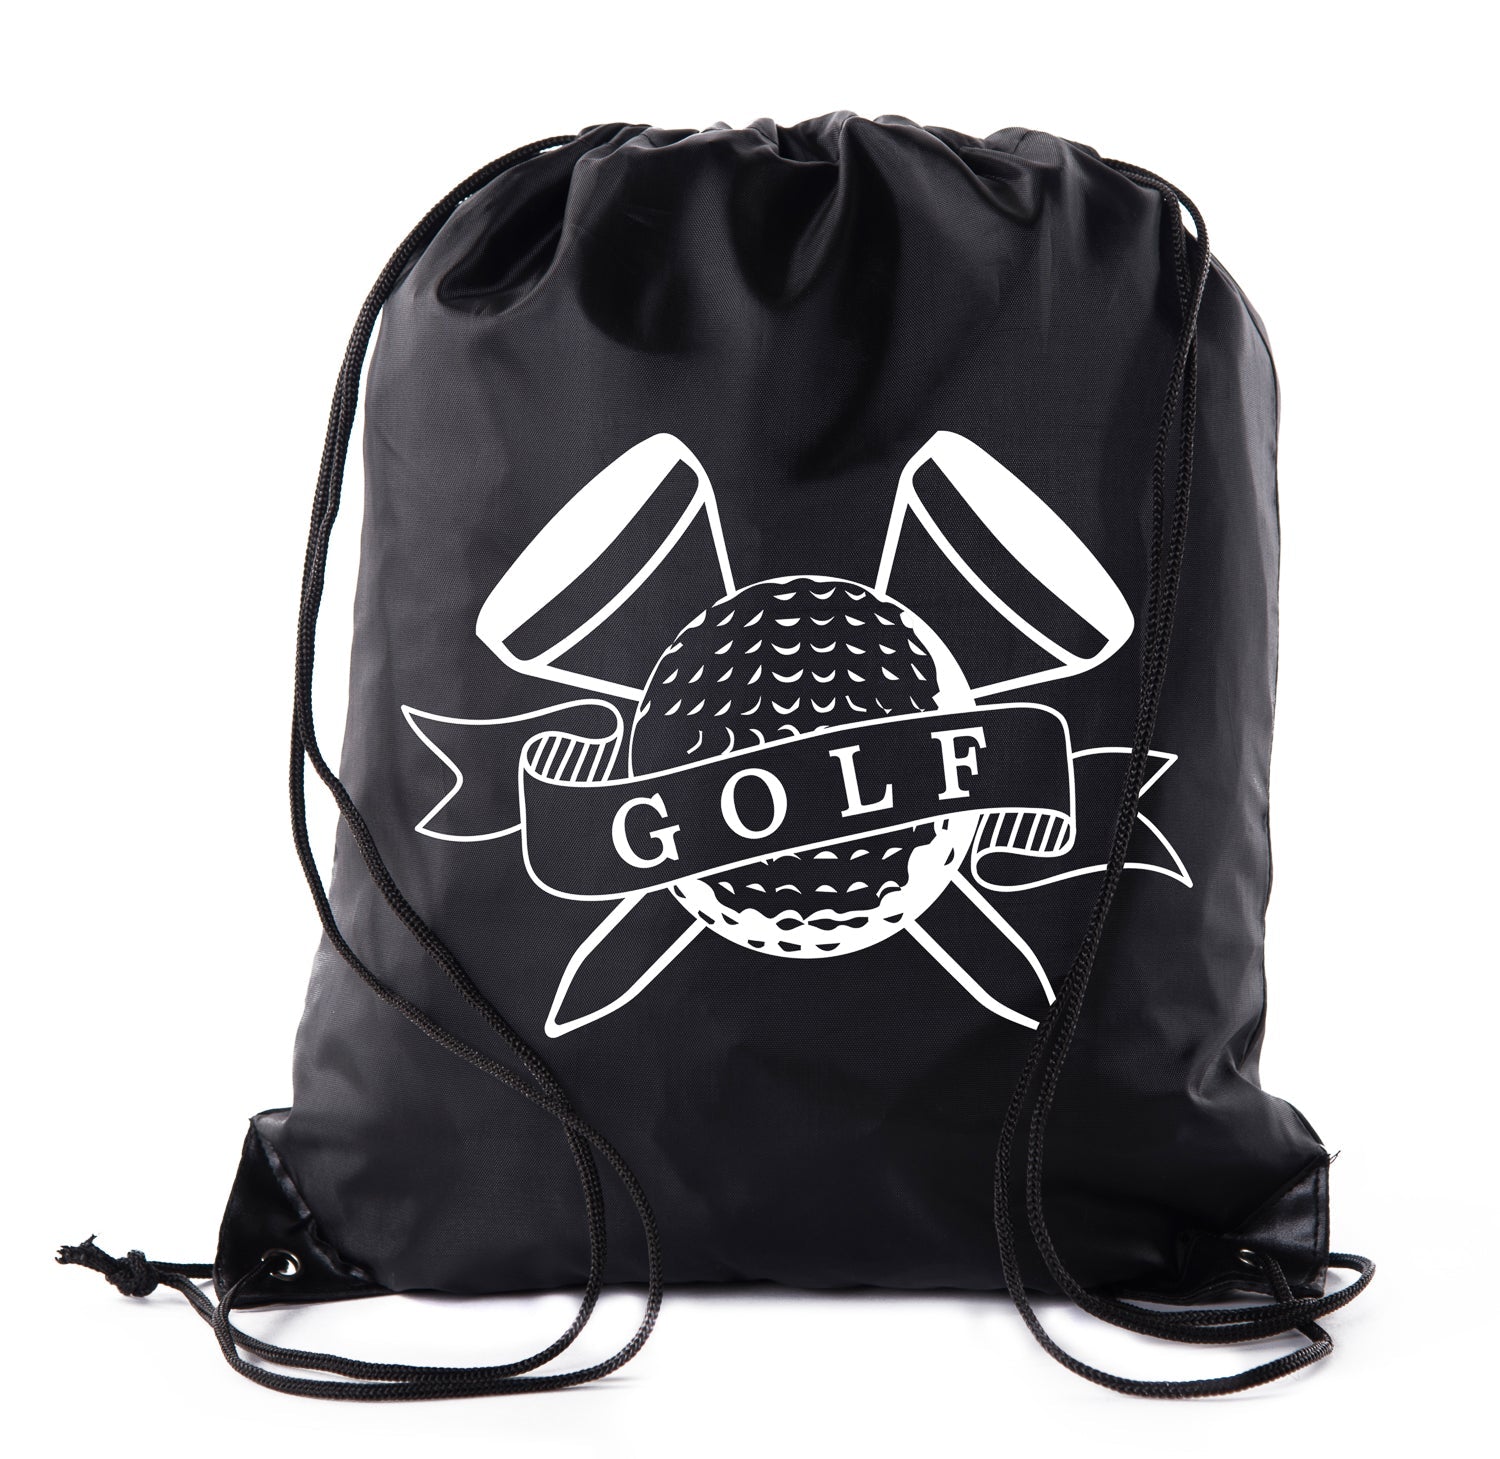 https://matohash.com/cdn/shop/products/golf-ball-tees-polyester-drawstring-bag-868617.jpg?v=1680576499